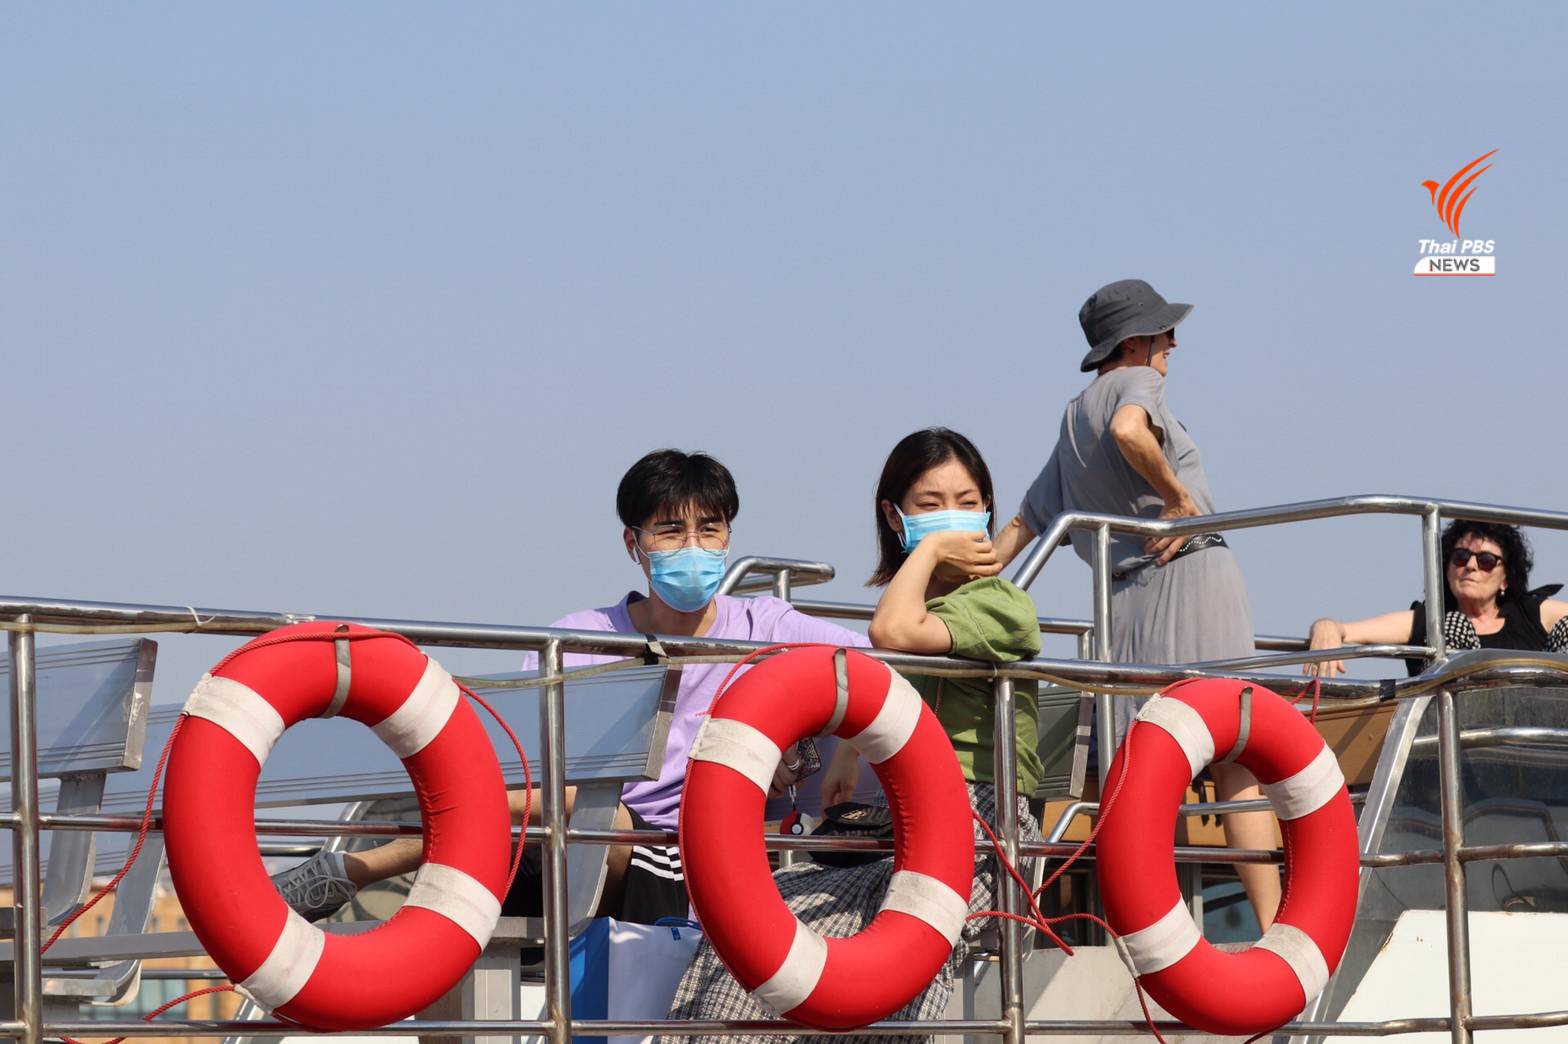 นักท่องเที่ยวล่องเรือในแม่น้ำเจ้าพระยาชมวิวทิวทัศน์วัดอรุณราชวรารามราชวรมหาวิหาร 